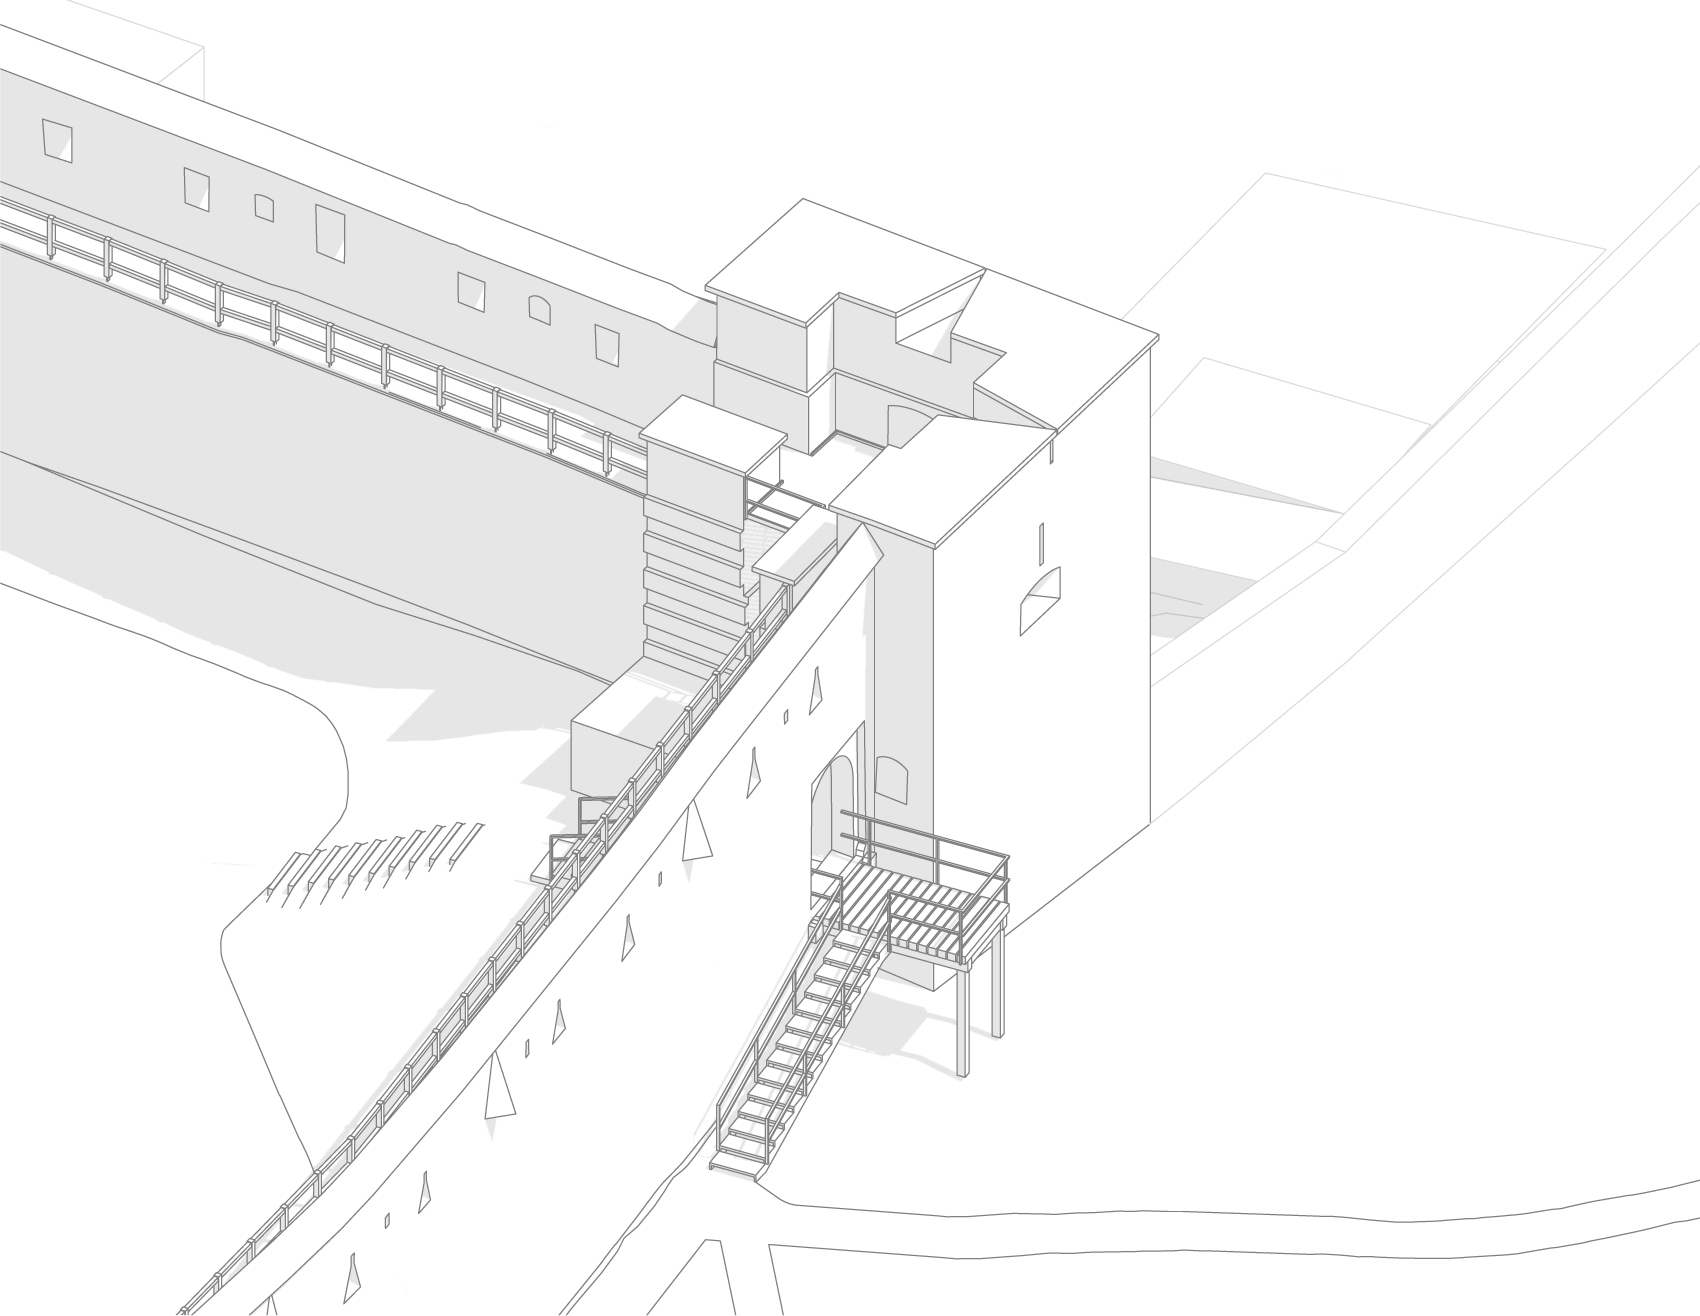 Veža V12 – návrh prepojenia cez jestvujúcu nevyužitú výpadovú bránku medzi vnútorným mestom a mestským parkom v bývalej priekope – návrh variantov náznaku padacieho mosta výpadovej bránky ako podopretá konštrukcia  - axonometria